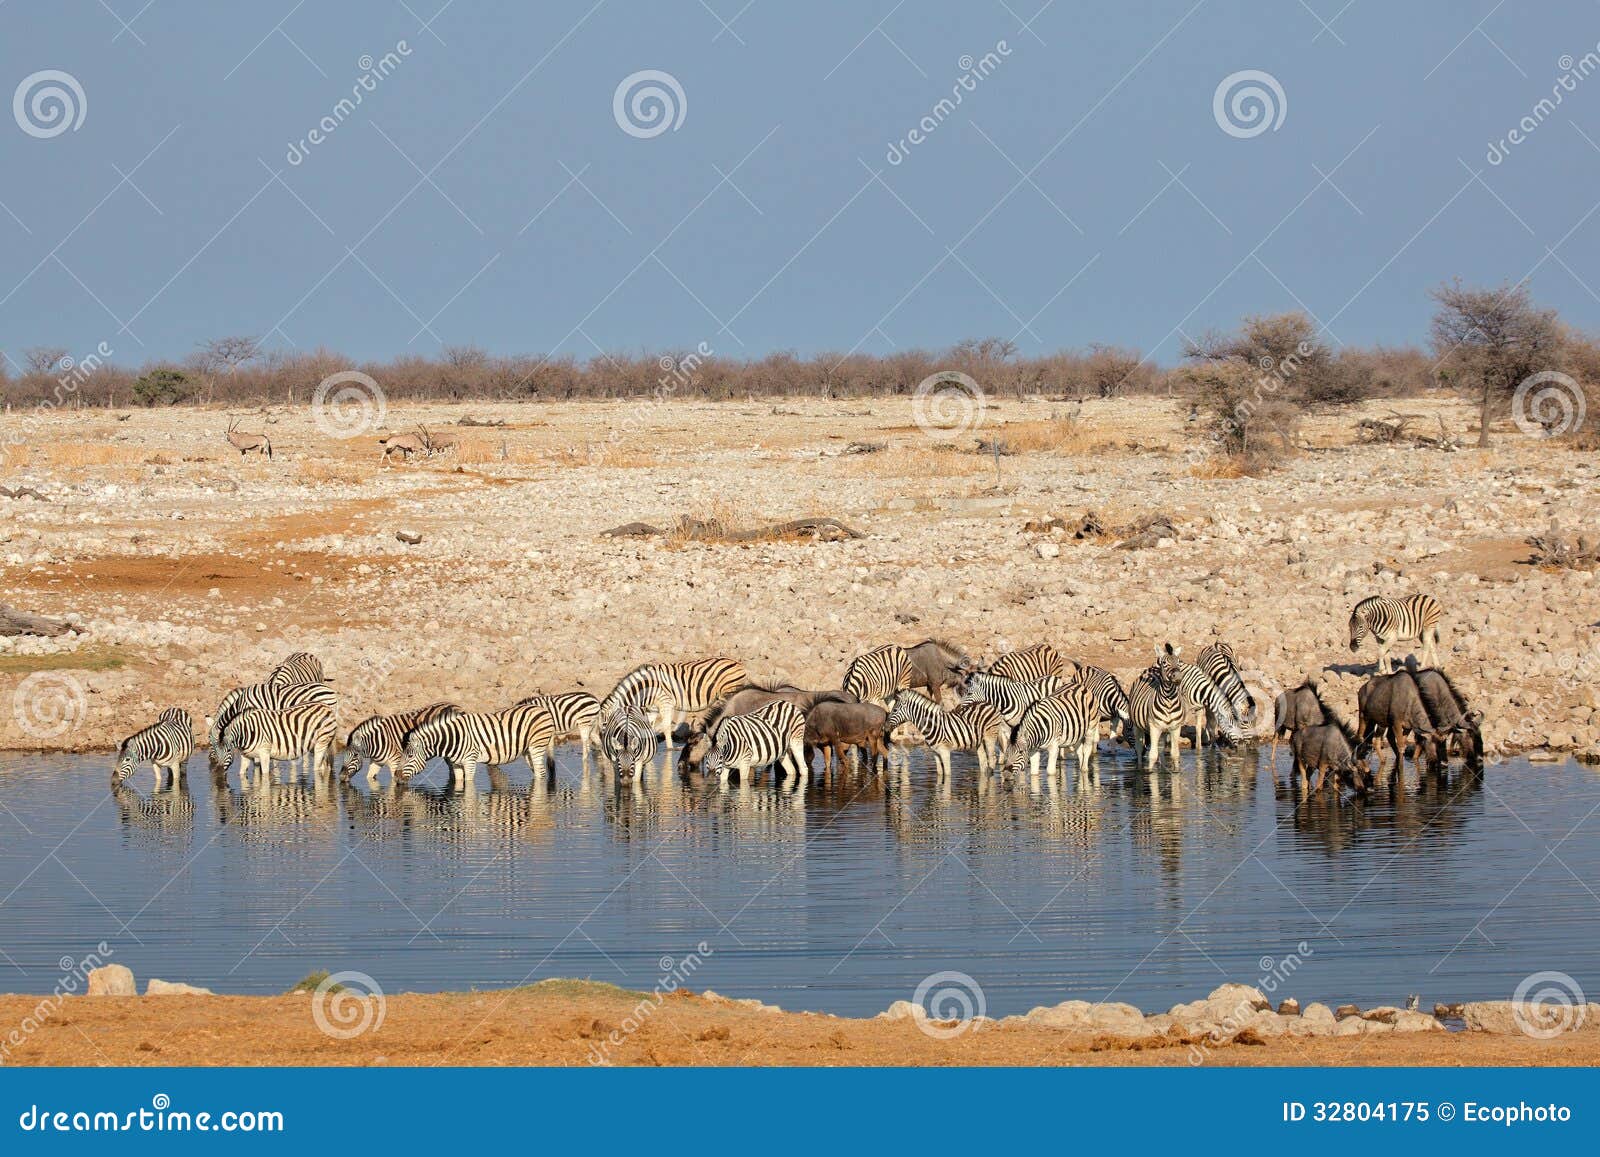 Waterhole de Etosha. Cebras y ñu azul que recolectan en un waterhole, parque nacional de Etosha, Namibia de los llanos